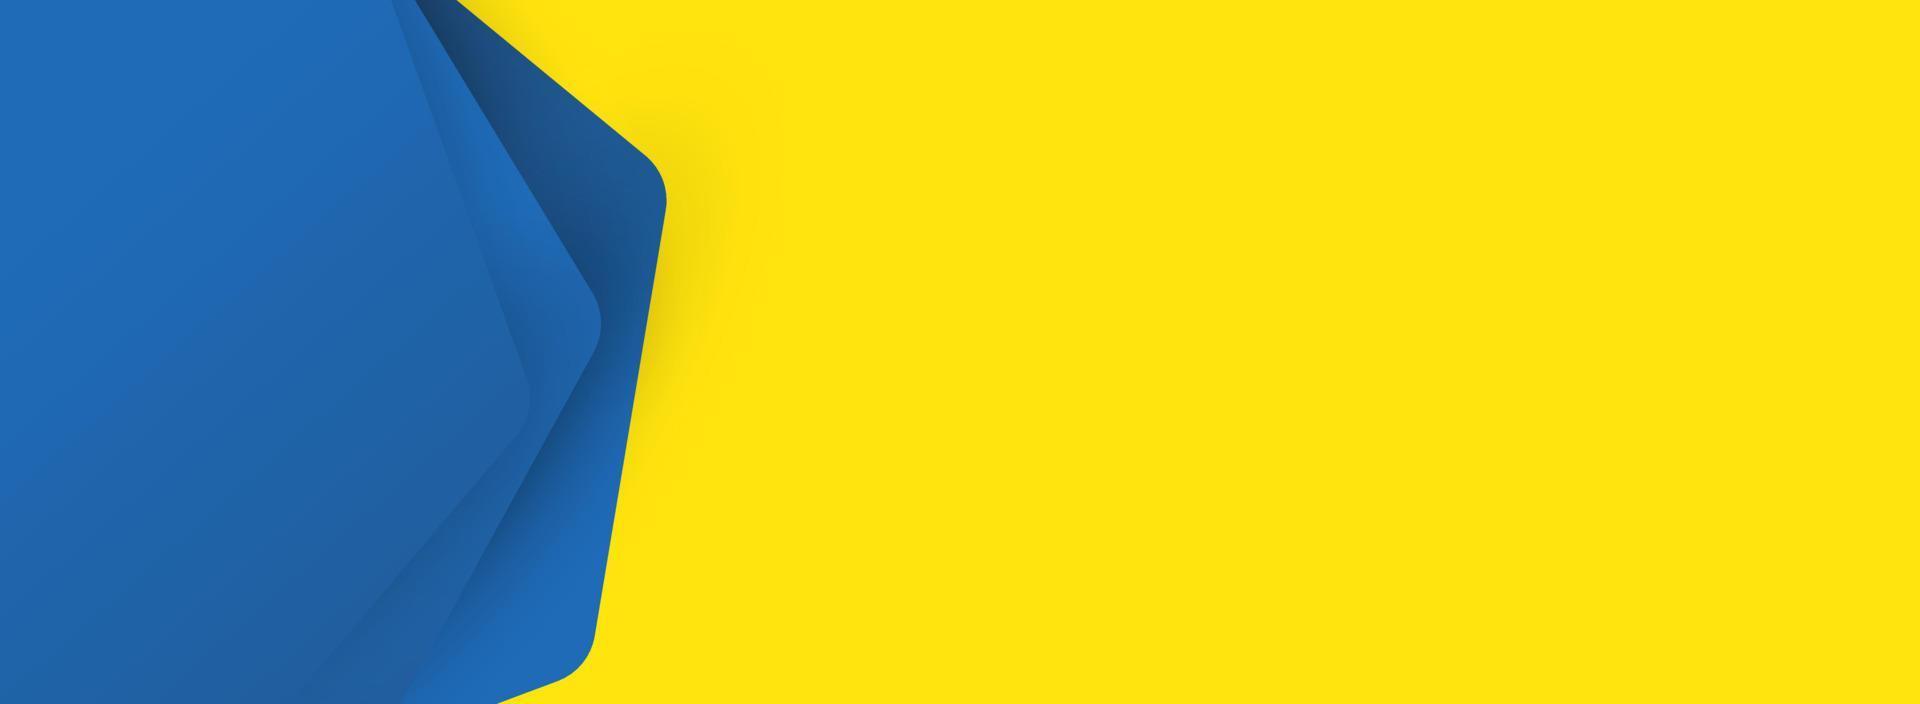 bannières modernes pour la conception de sites Web. conception de fond abstrait bleu et jaune en vecteur et illustration